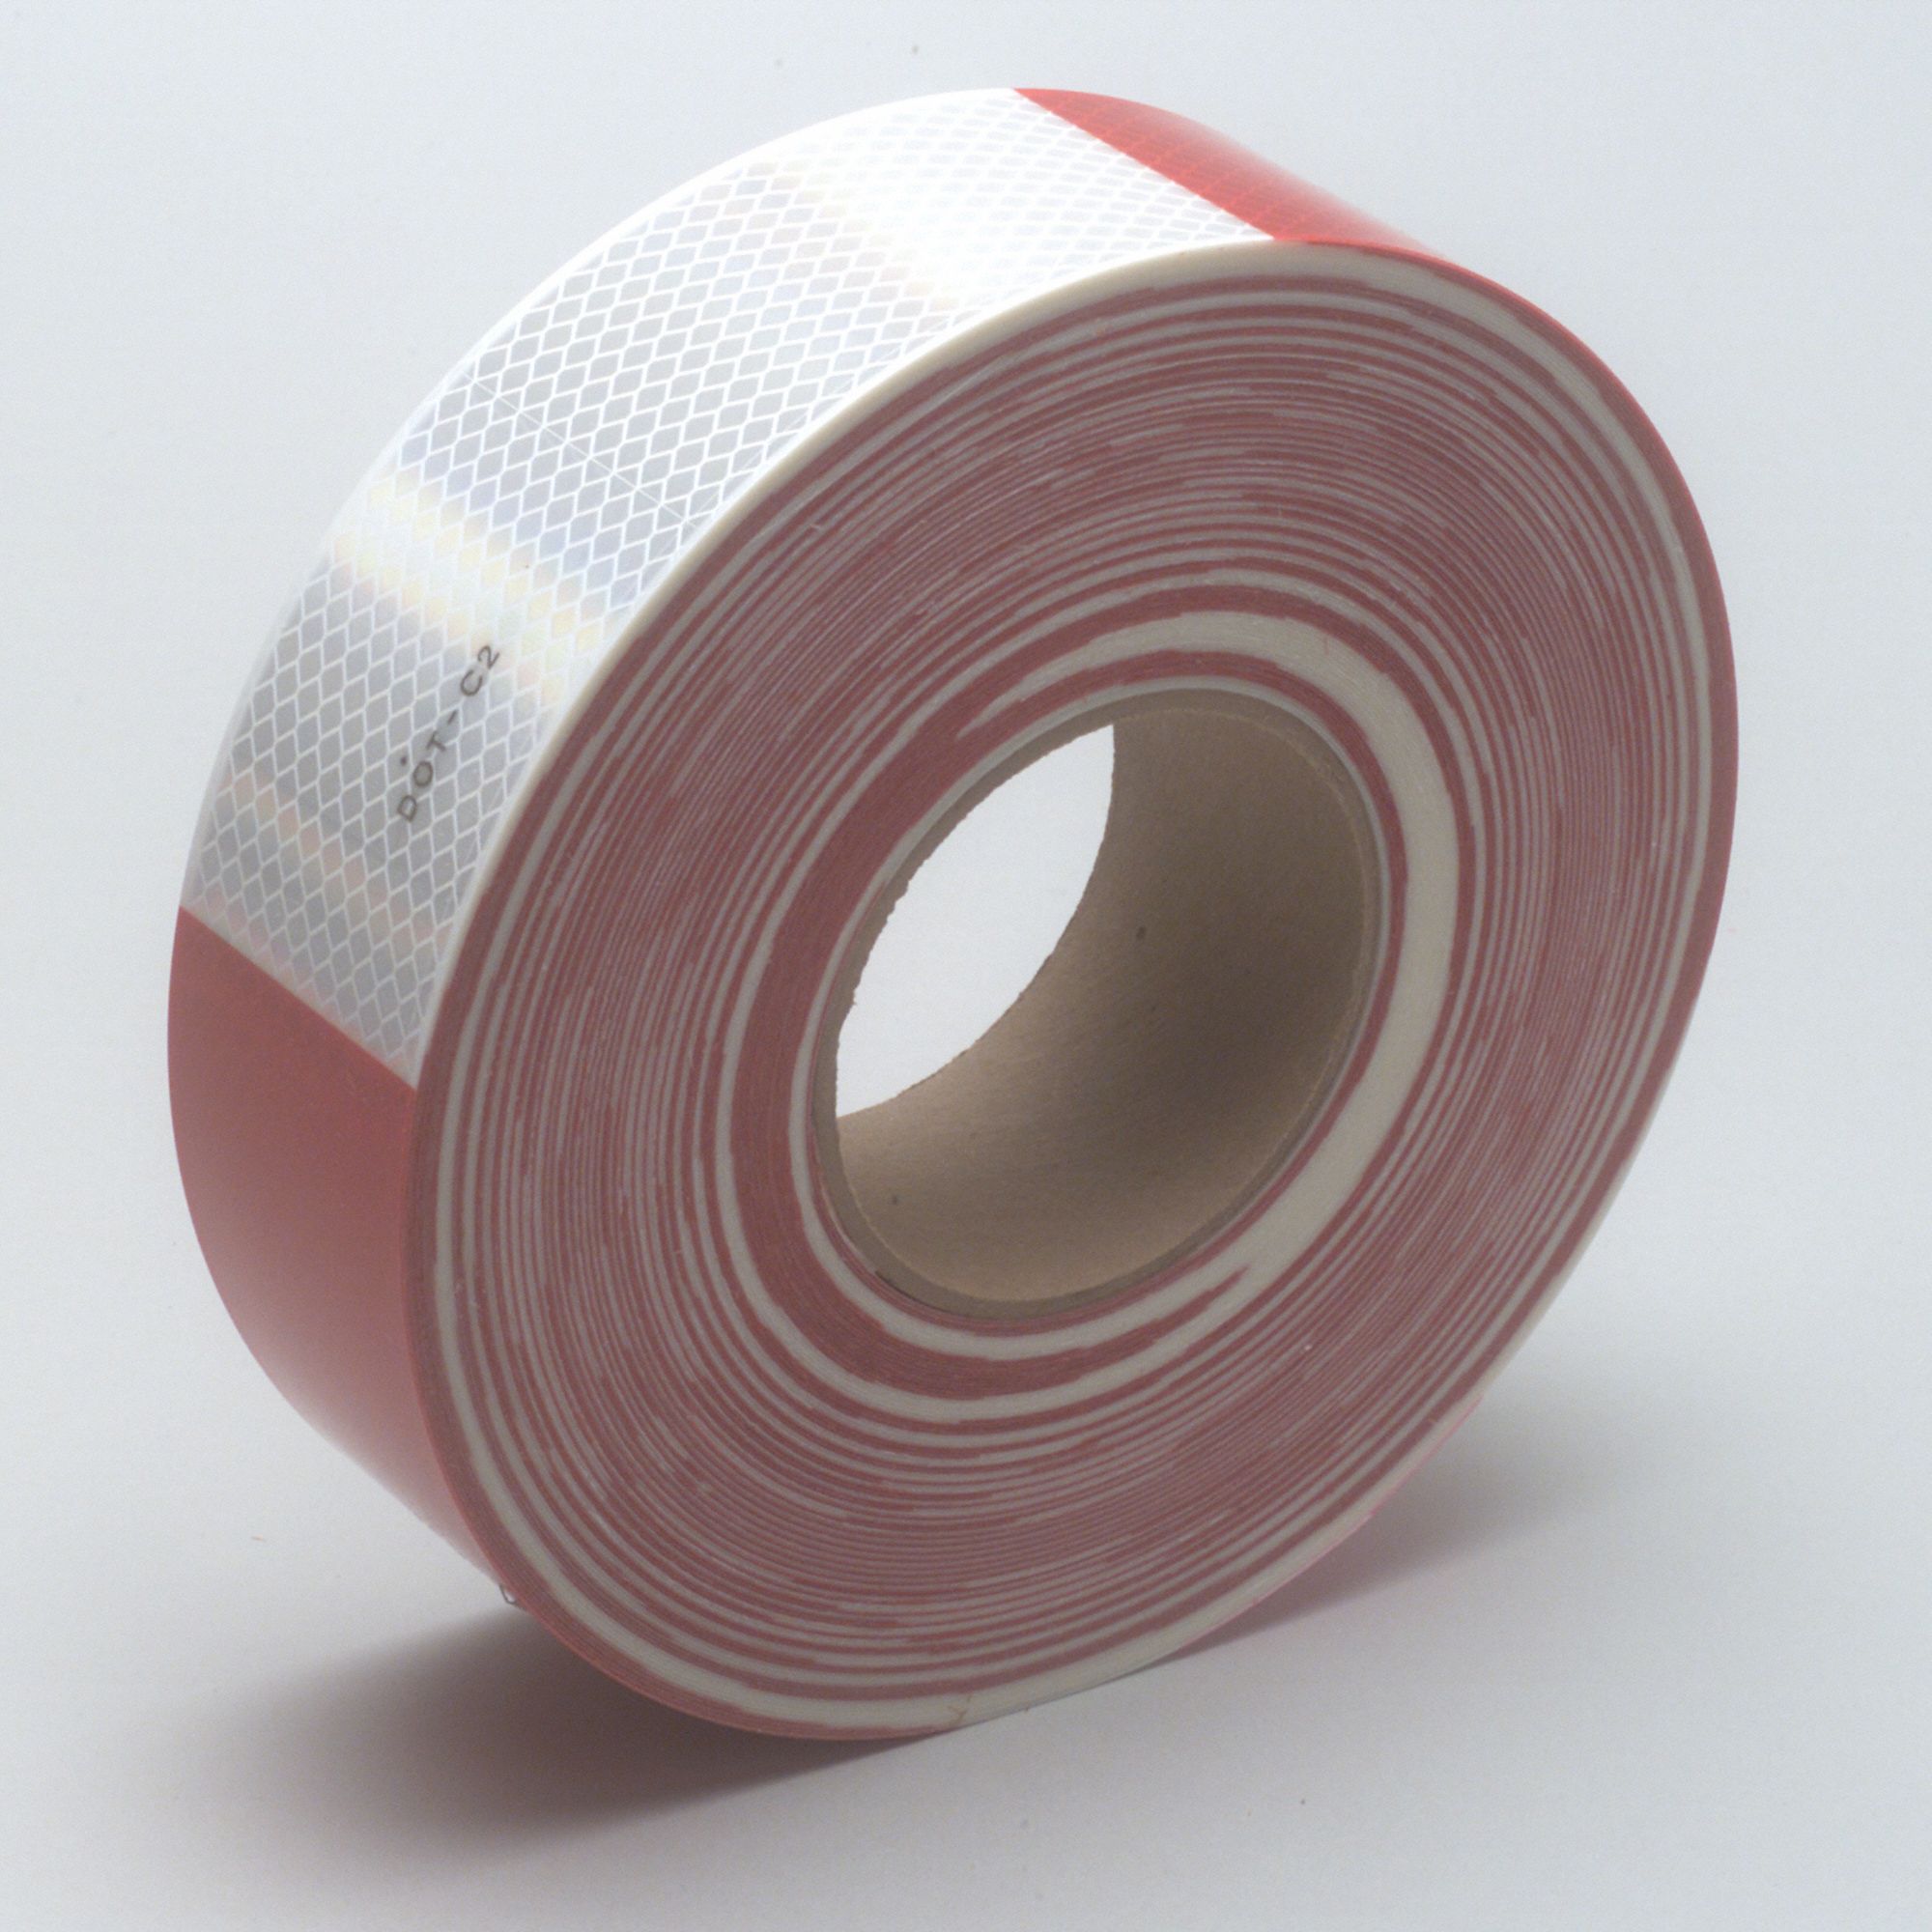 3m Premium Grade Reflective Tape Markingtrailers Redwhite 2 In Wd